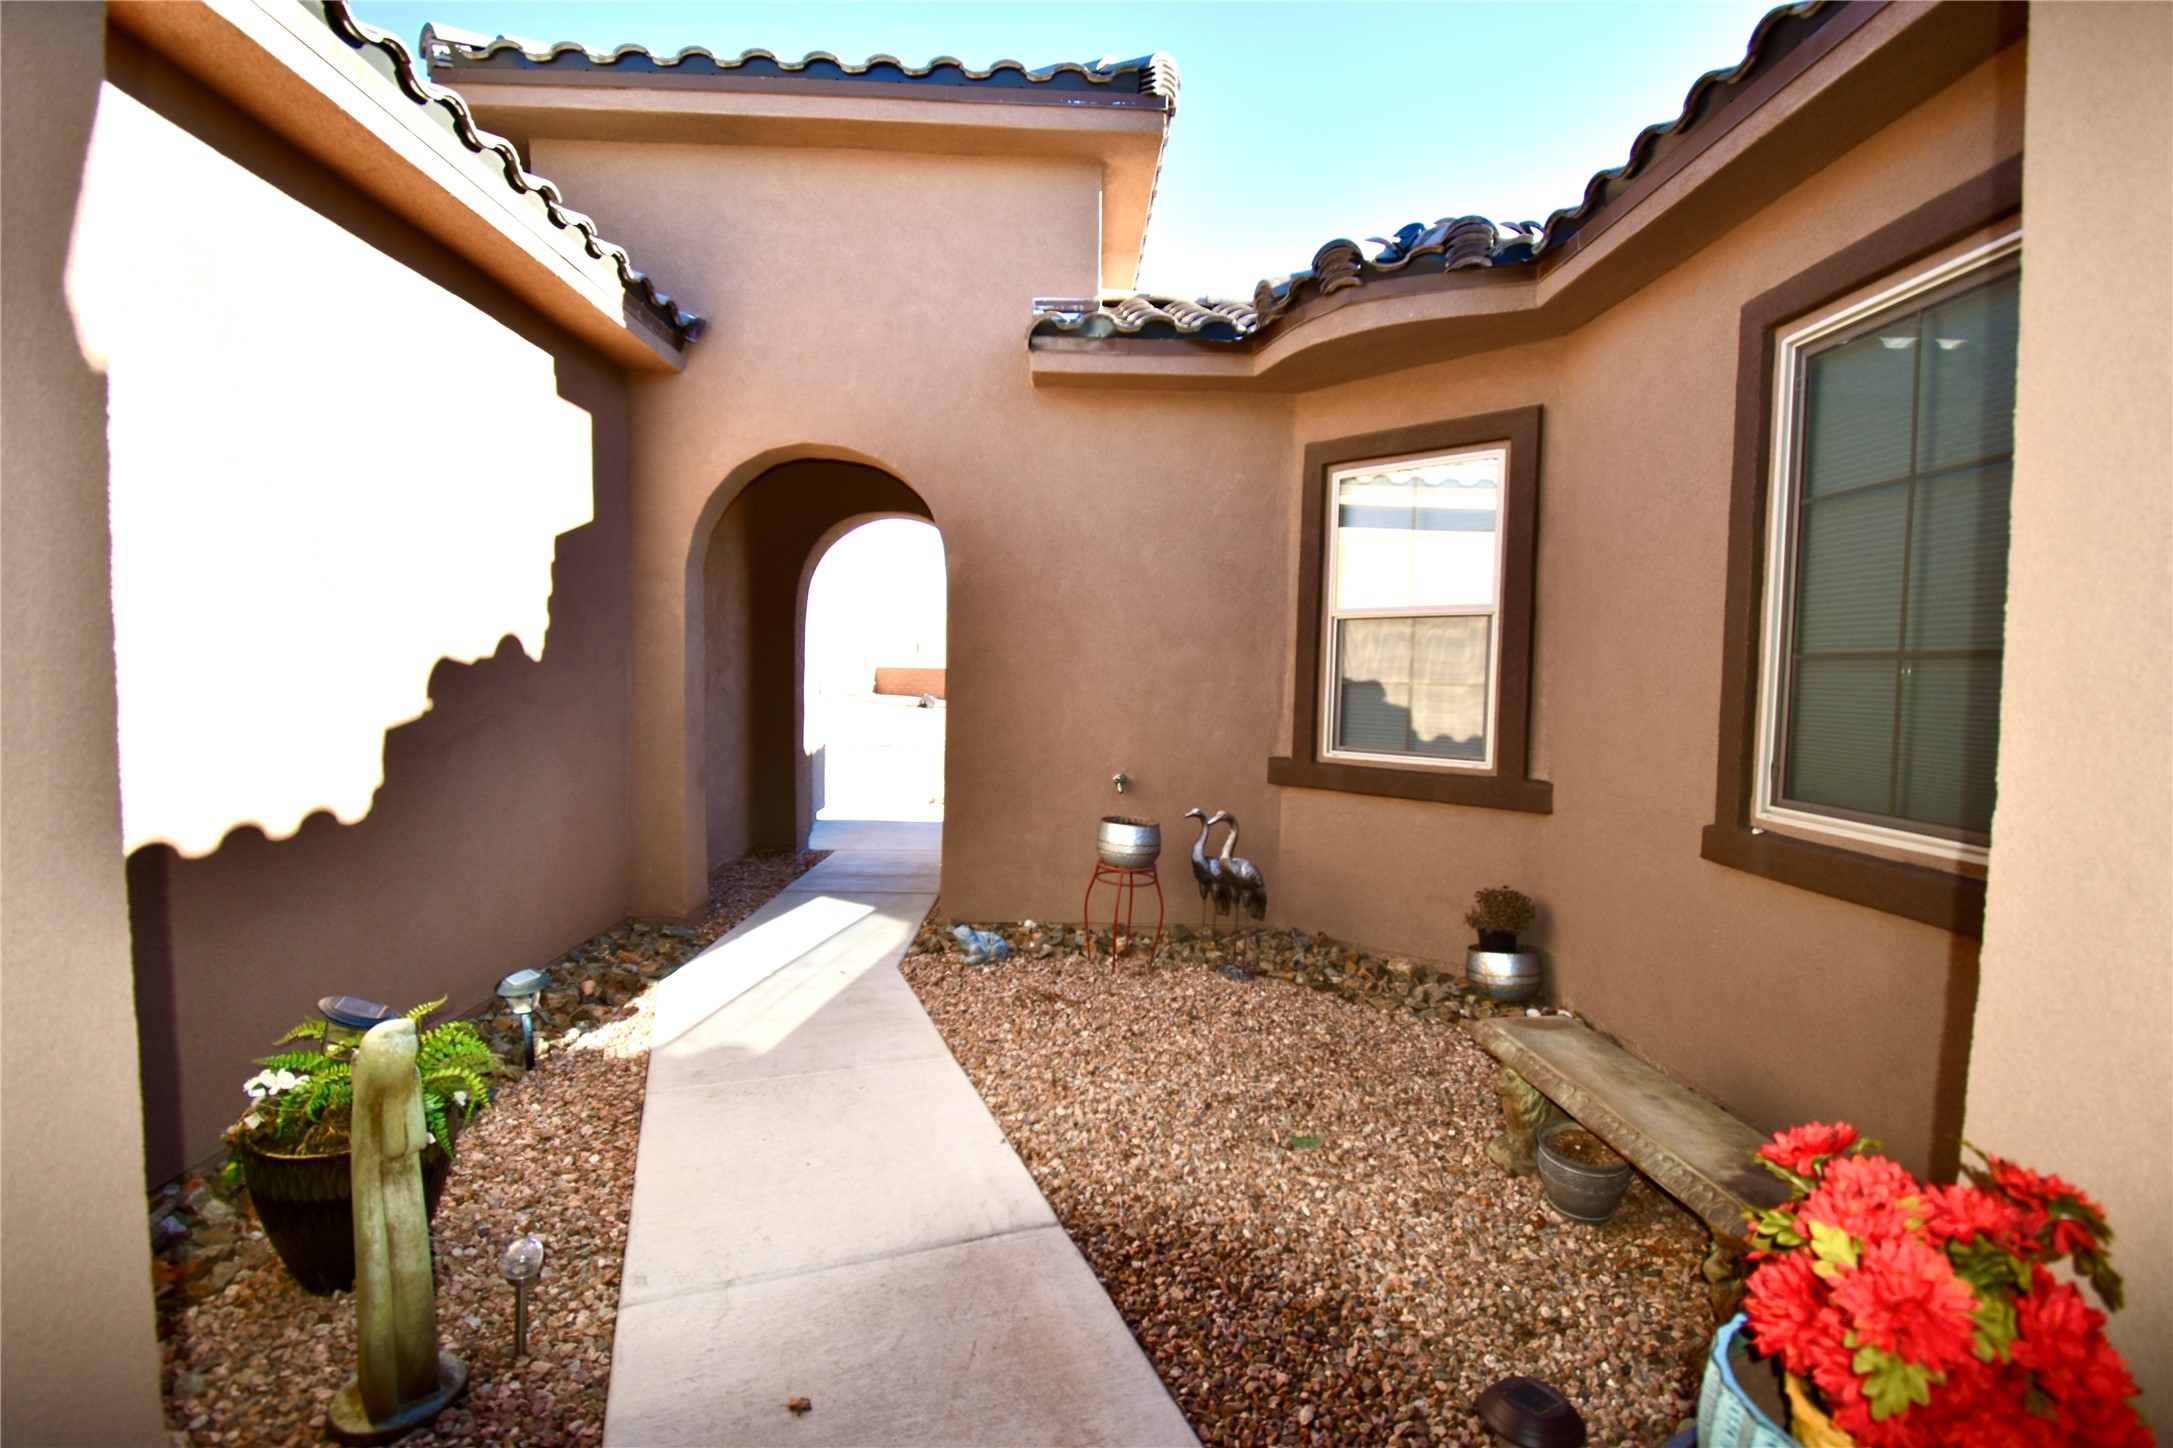 4684 Lluvia Encantada, Santa Fe, New Mexico 87507, 2 Bedrooms Bedrooms, ,3 BathroomsBathrooms,Residential,For Sale,4684 Lluvia Encantada,202234394